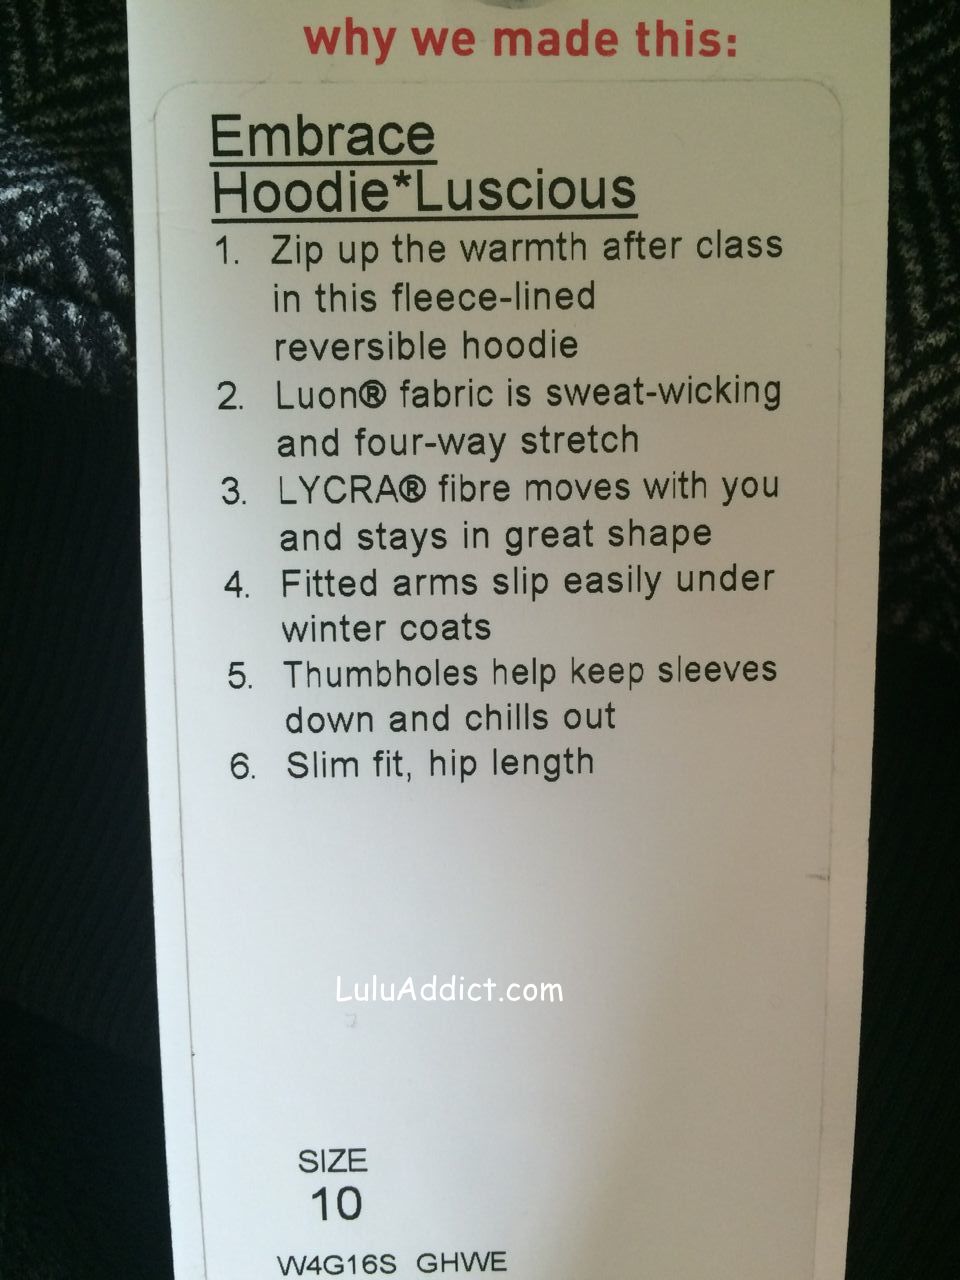 lululemon embrace hoodie luscious